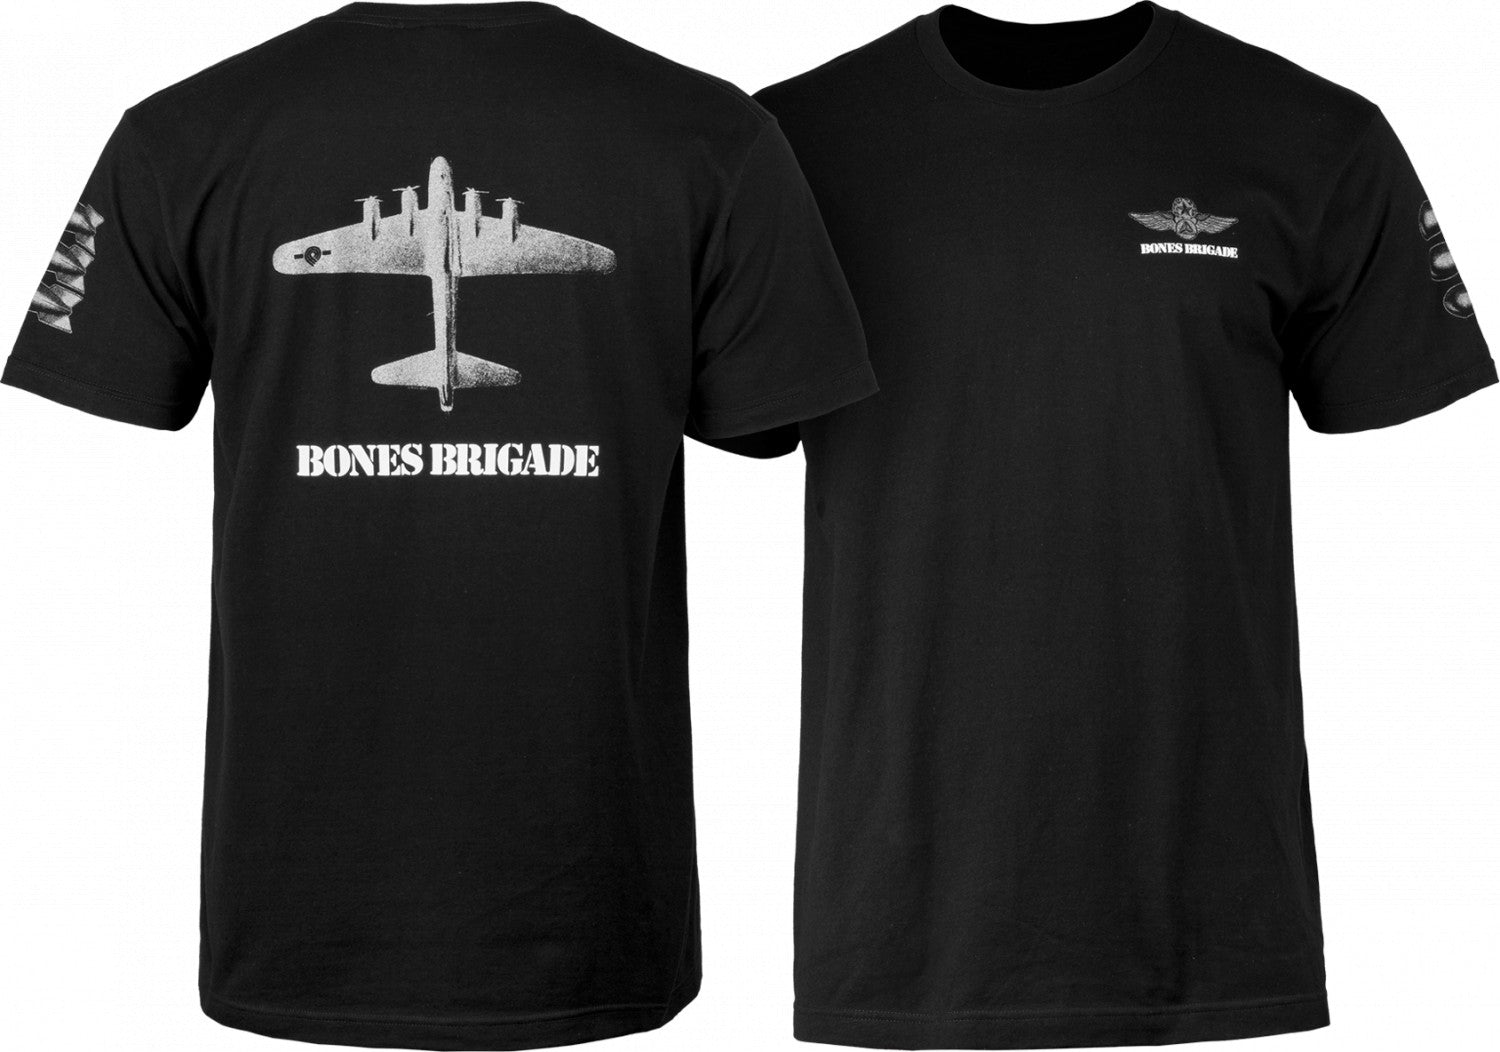 Powell Peralta Bones Brigade Bomber T-shirt